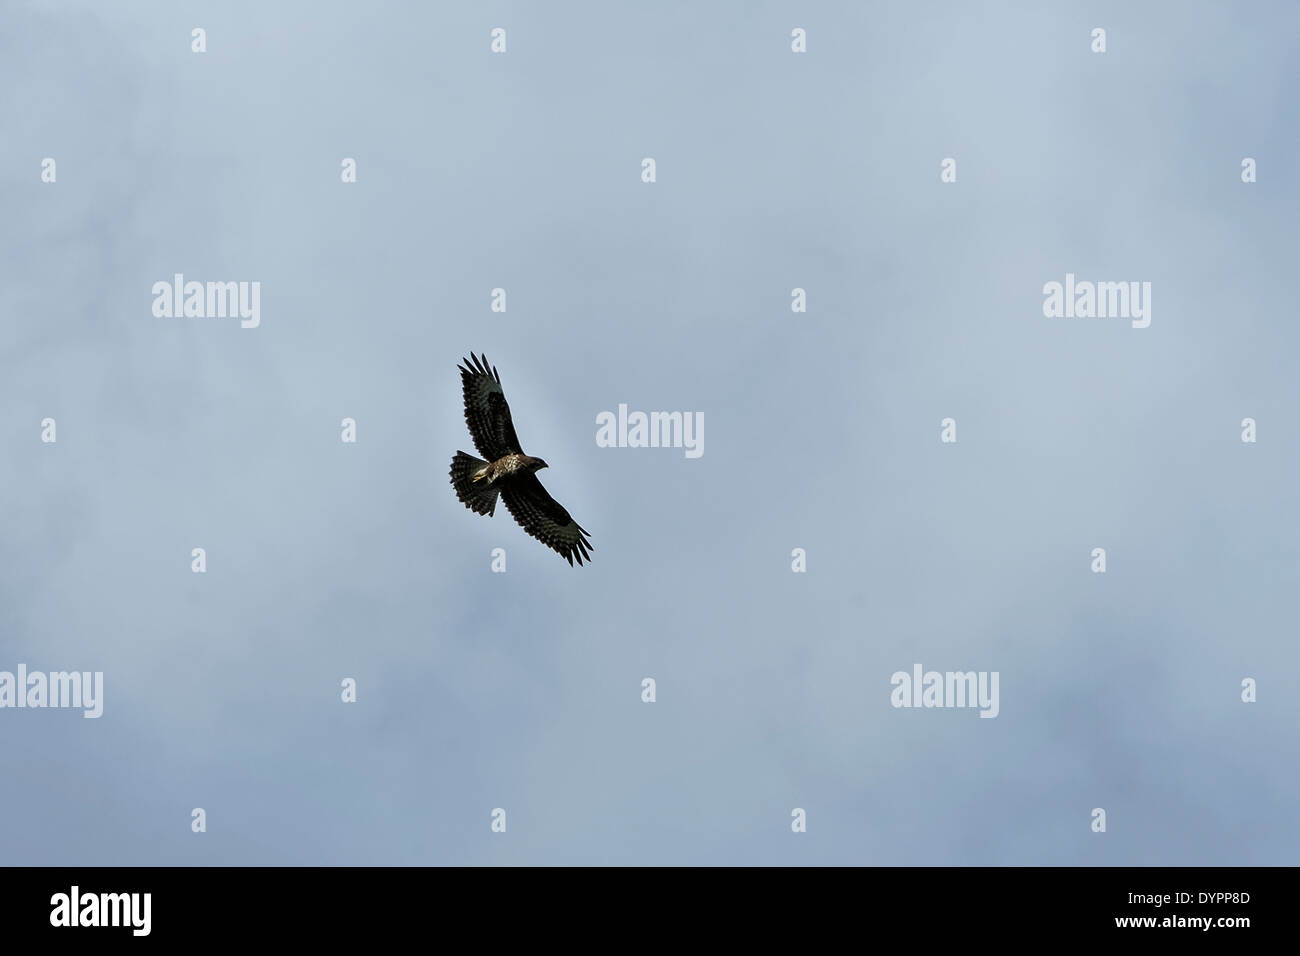 Vol à buzzard unique aux ailes déployées, près de silhouette sur les nuages gris-bleu, d'en bas ; le format paysage. Banque D'Images